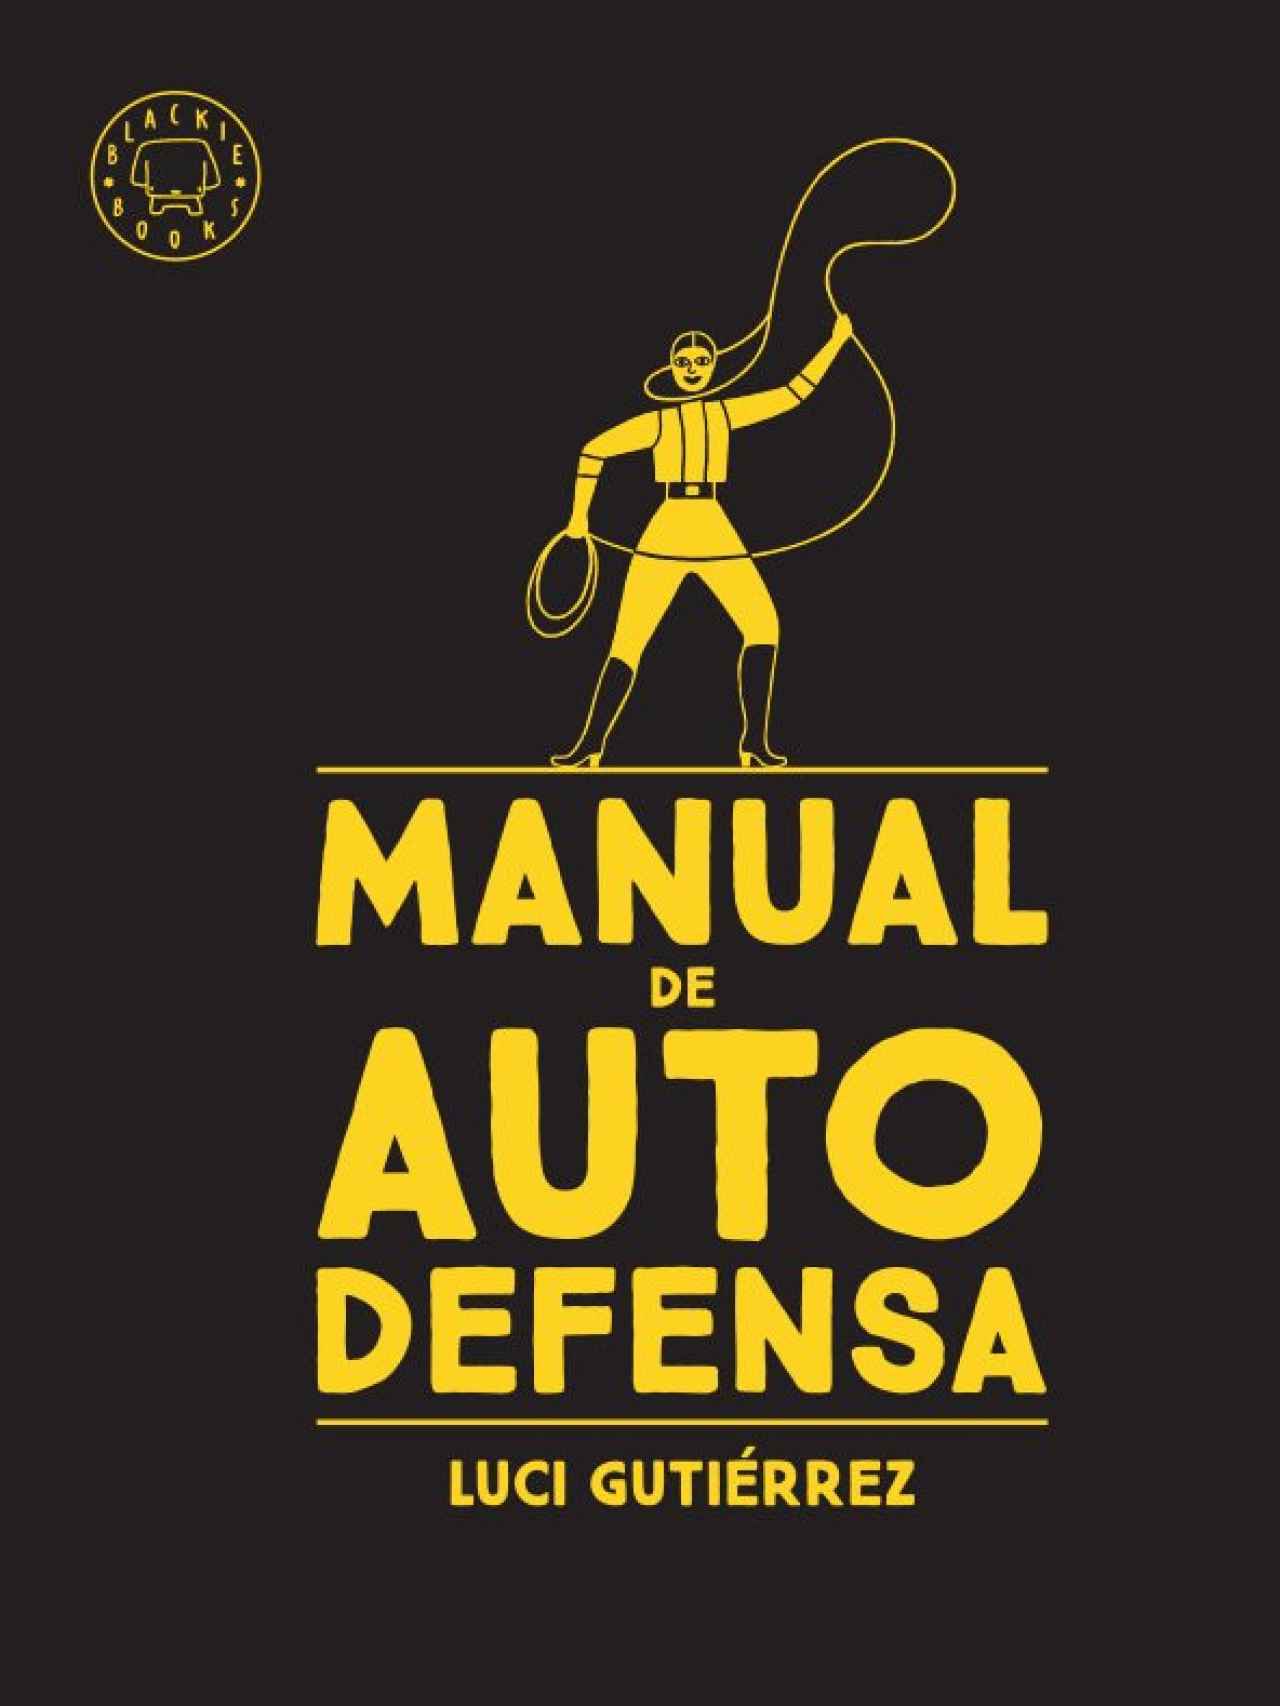 'Manual de Autodefensa' de Luci Gutiérrez